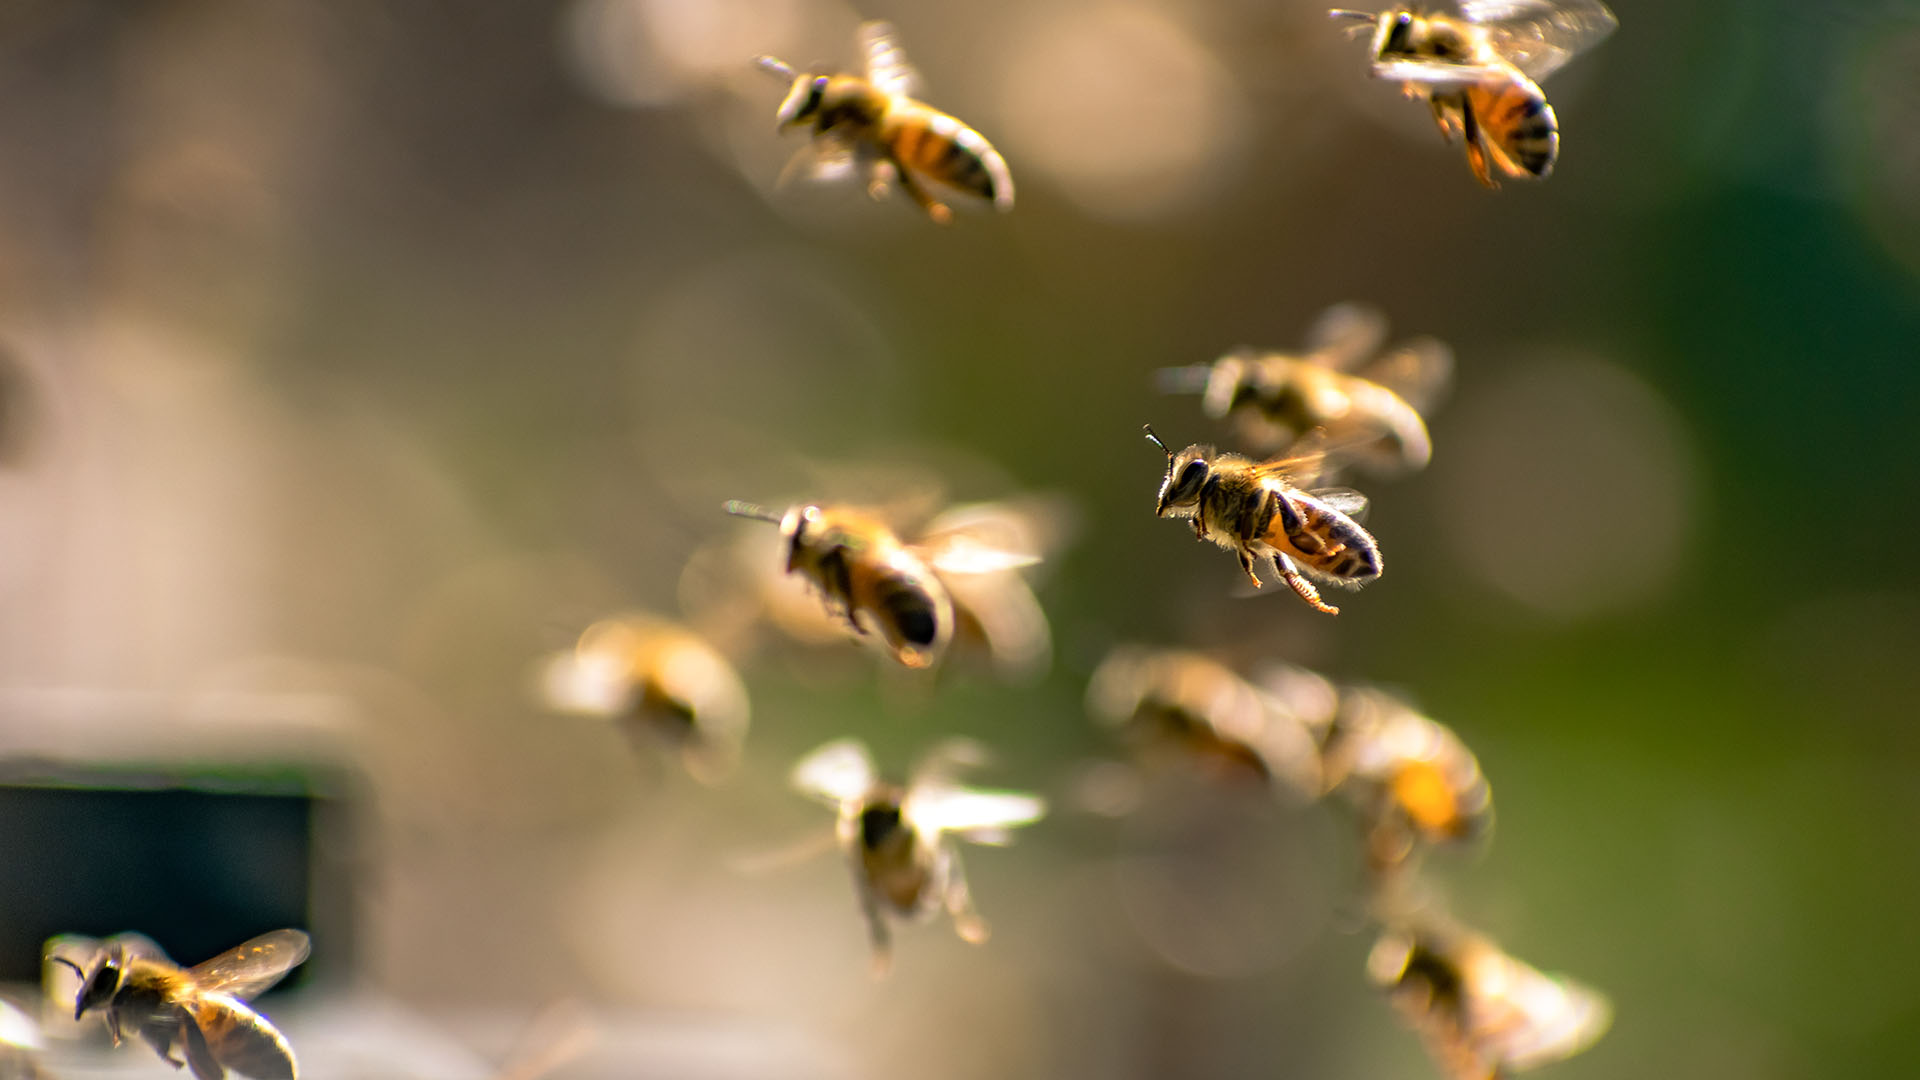 El equipo descubrió que en los años más cálidos y húmedos, las abejas mostraban una mayor asimetría en las alas (Getty)